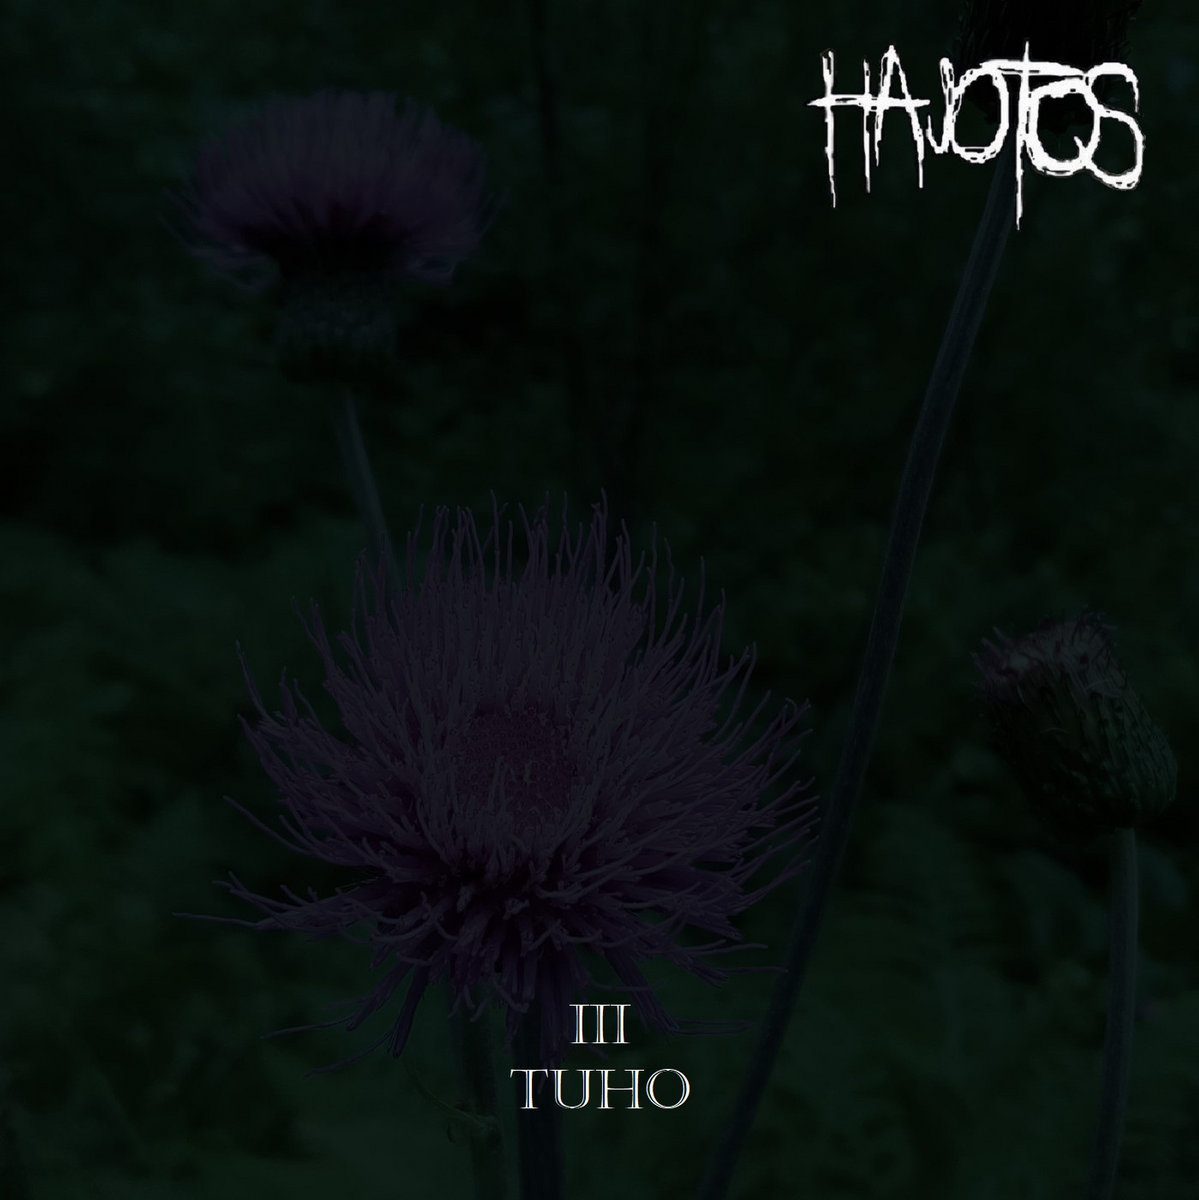 Hajotos - III - Tuho